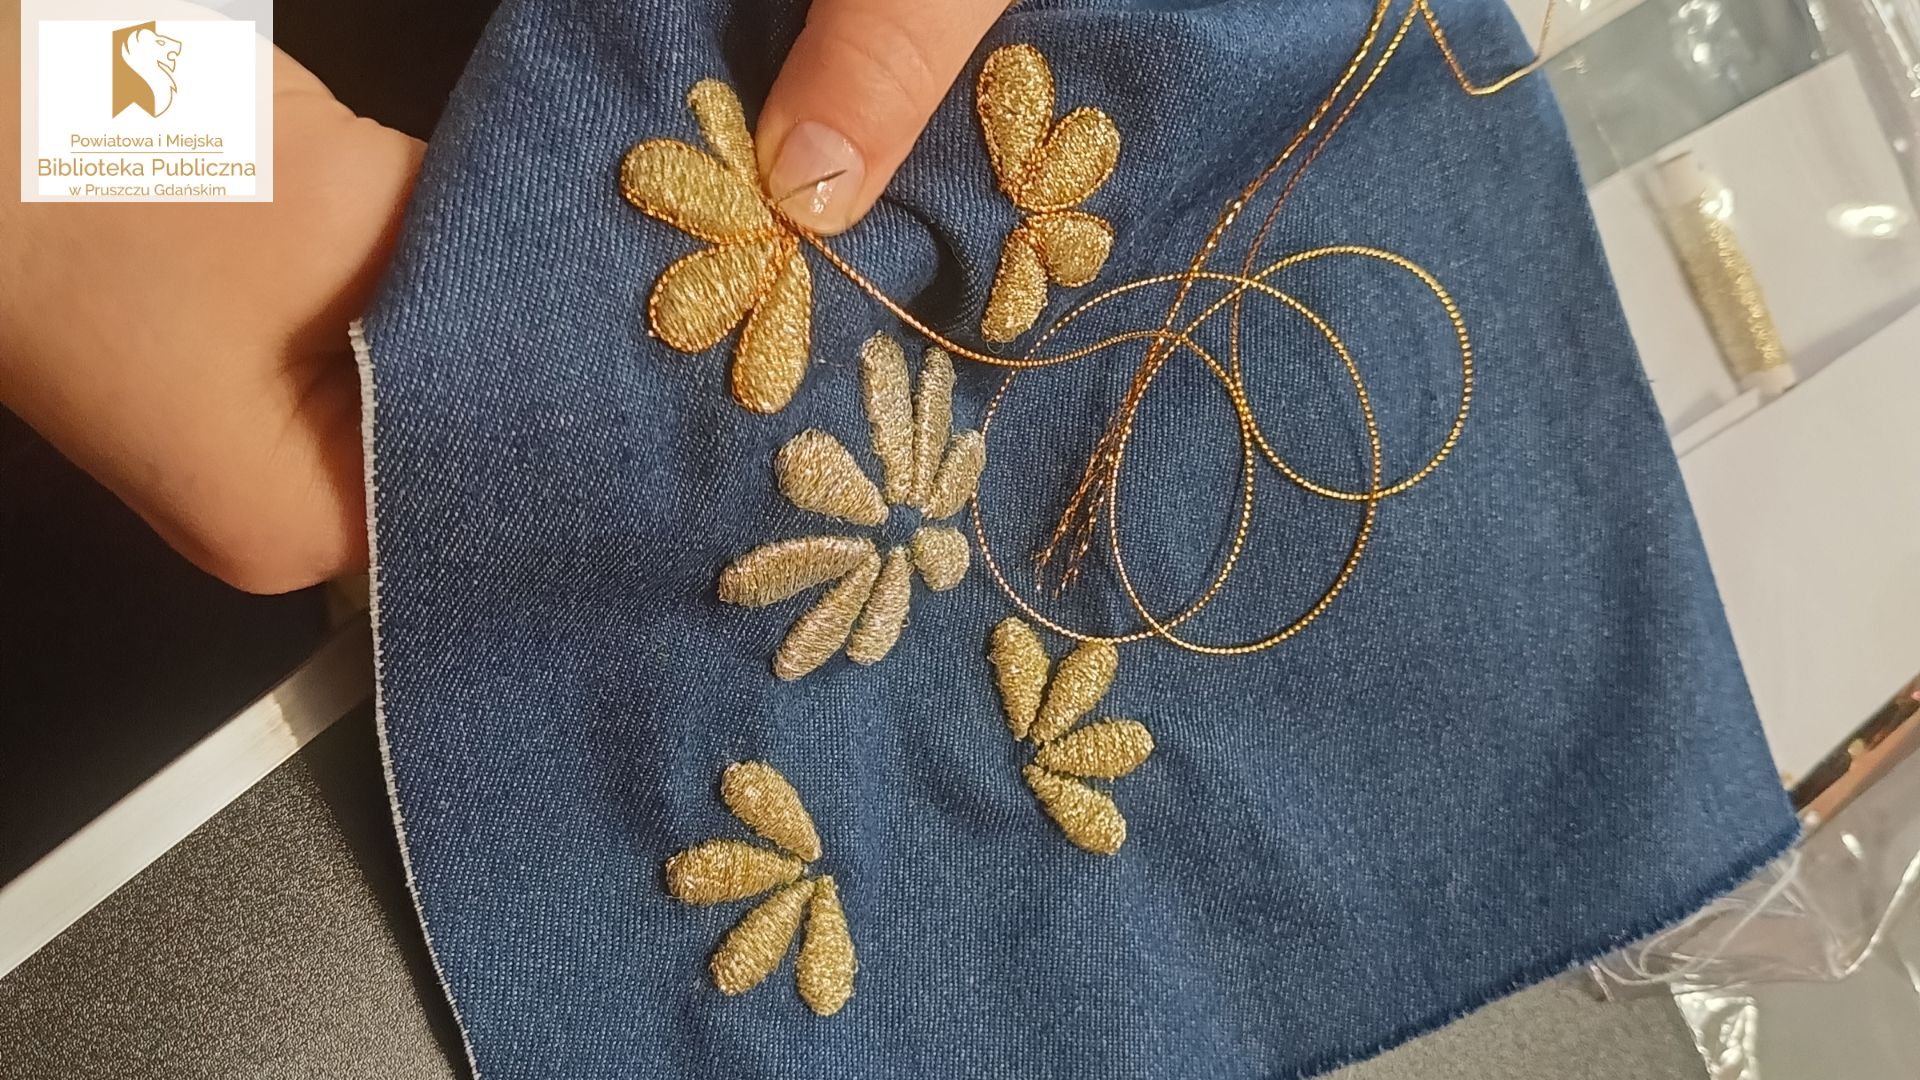 Płatki kwiatów wyszywane złota nitką na jeansowym materiale.